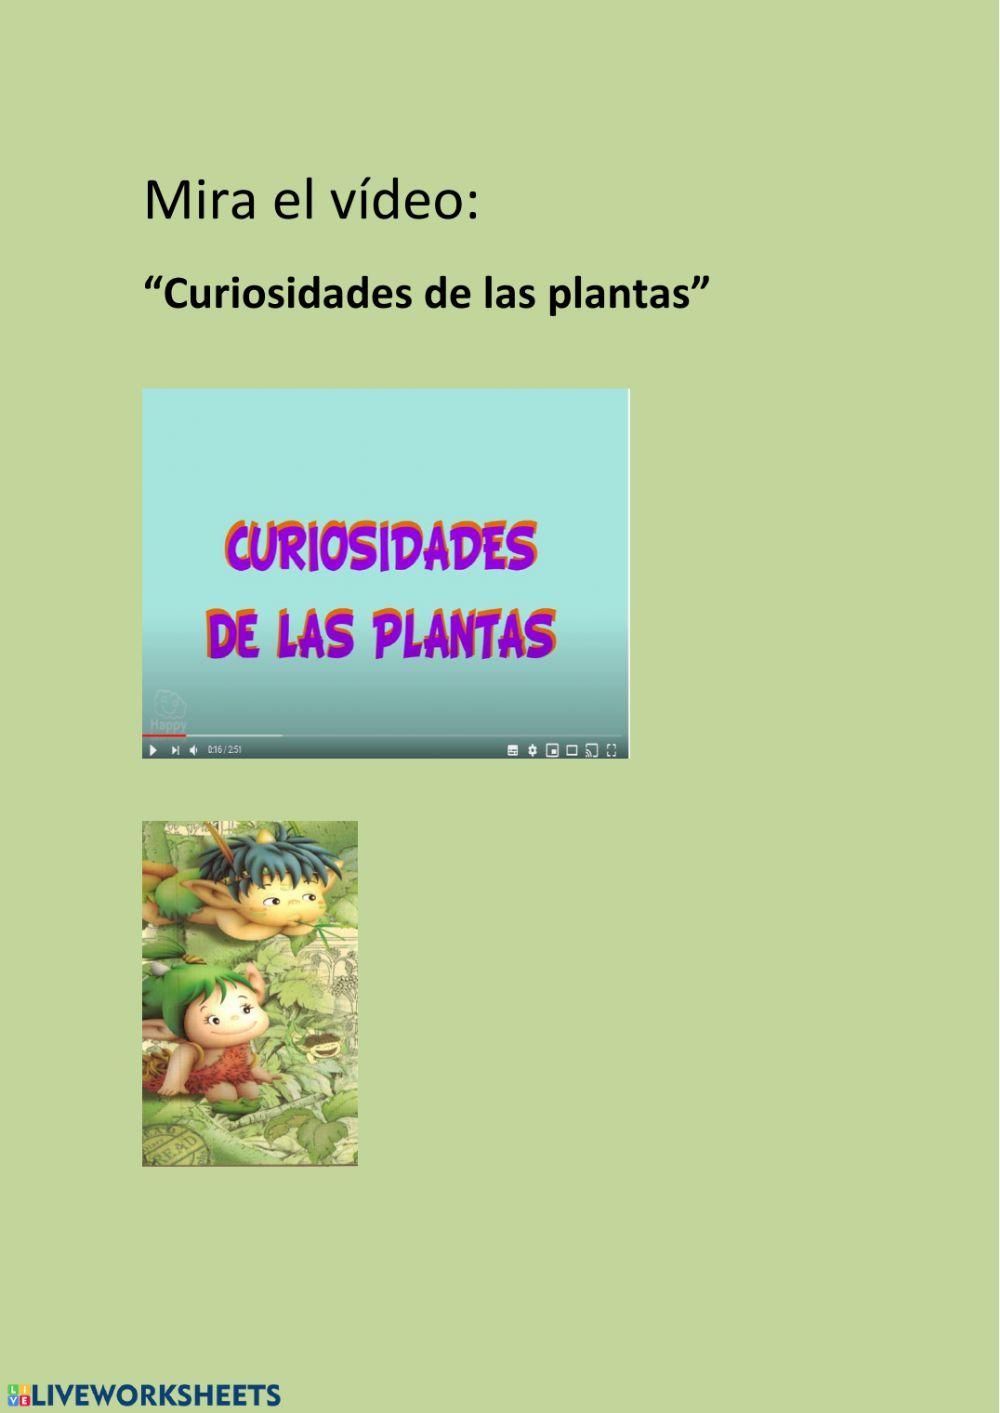 Curiosidades de las plantas